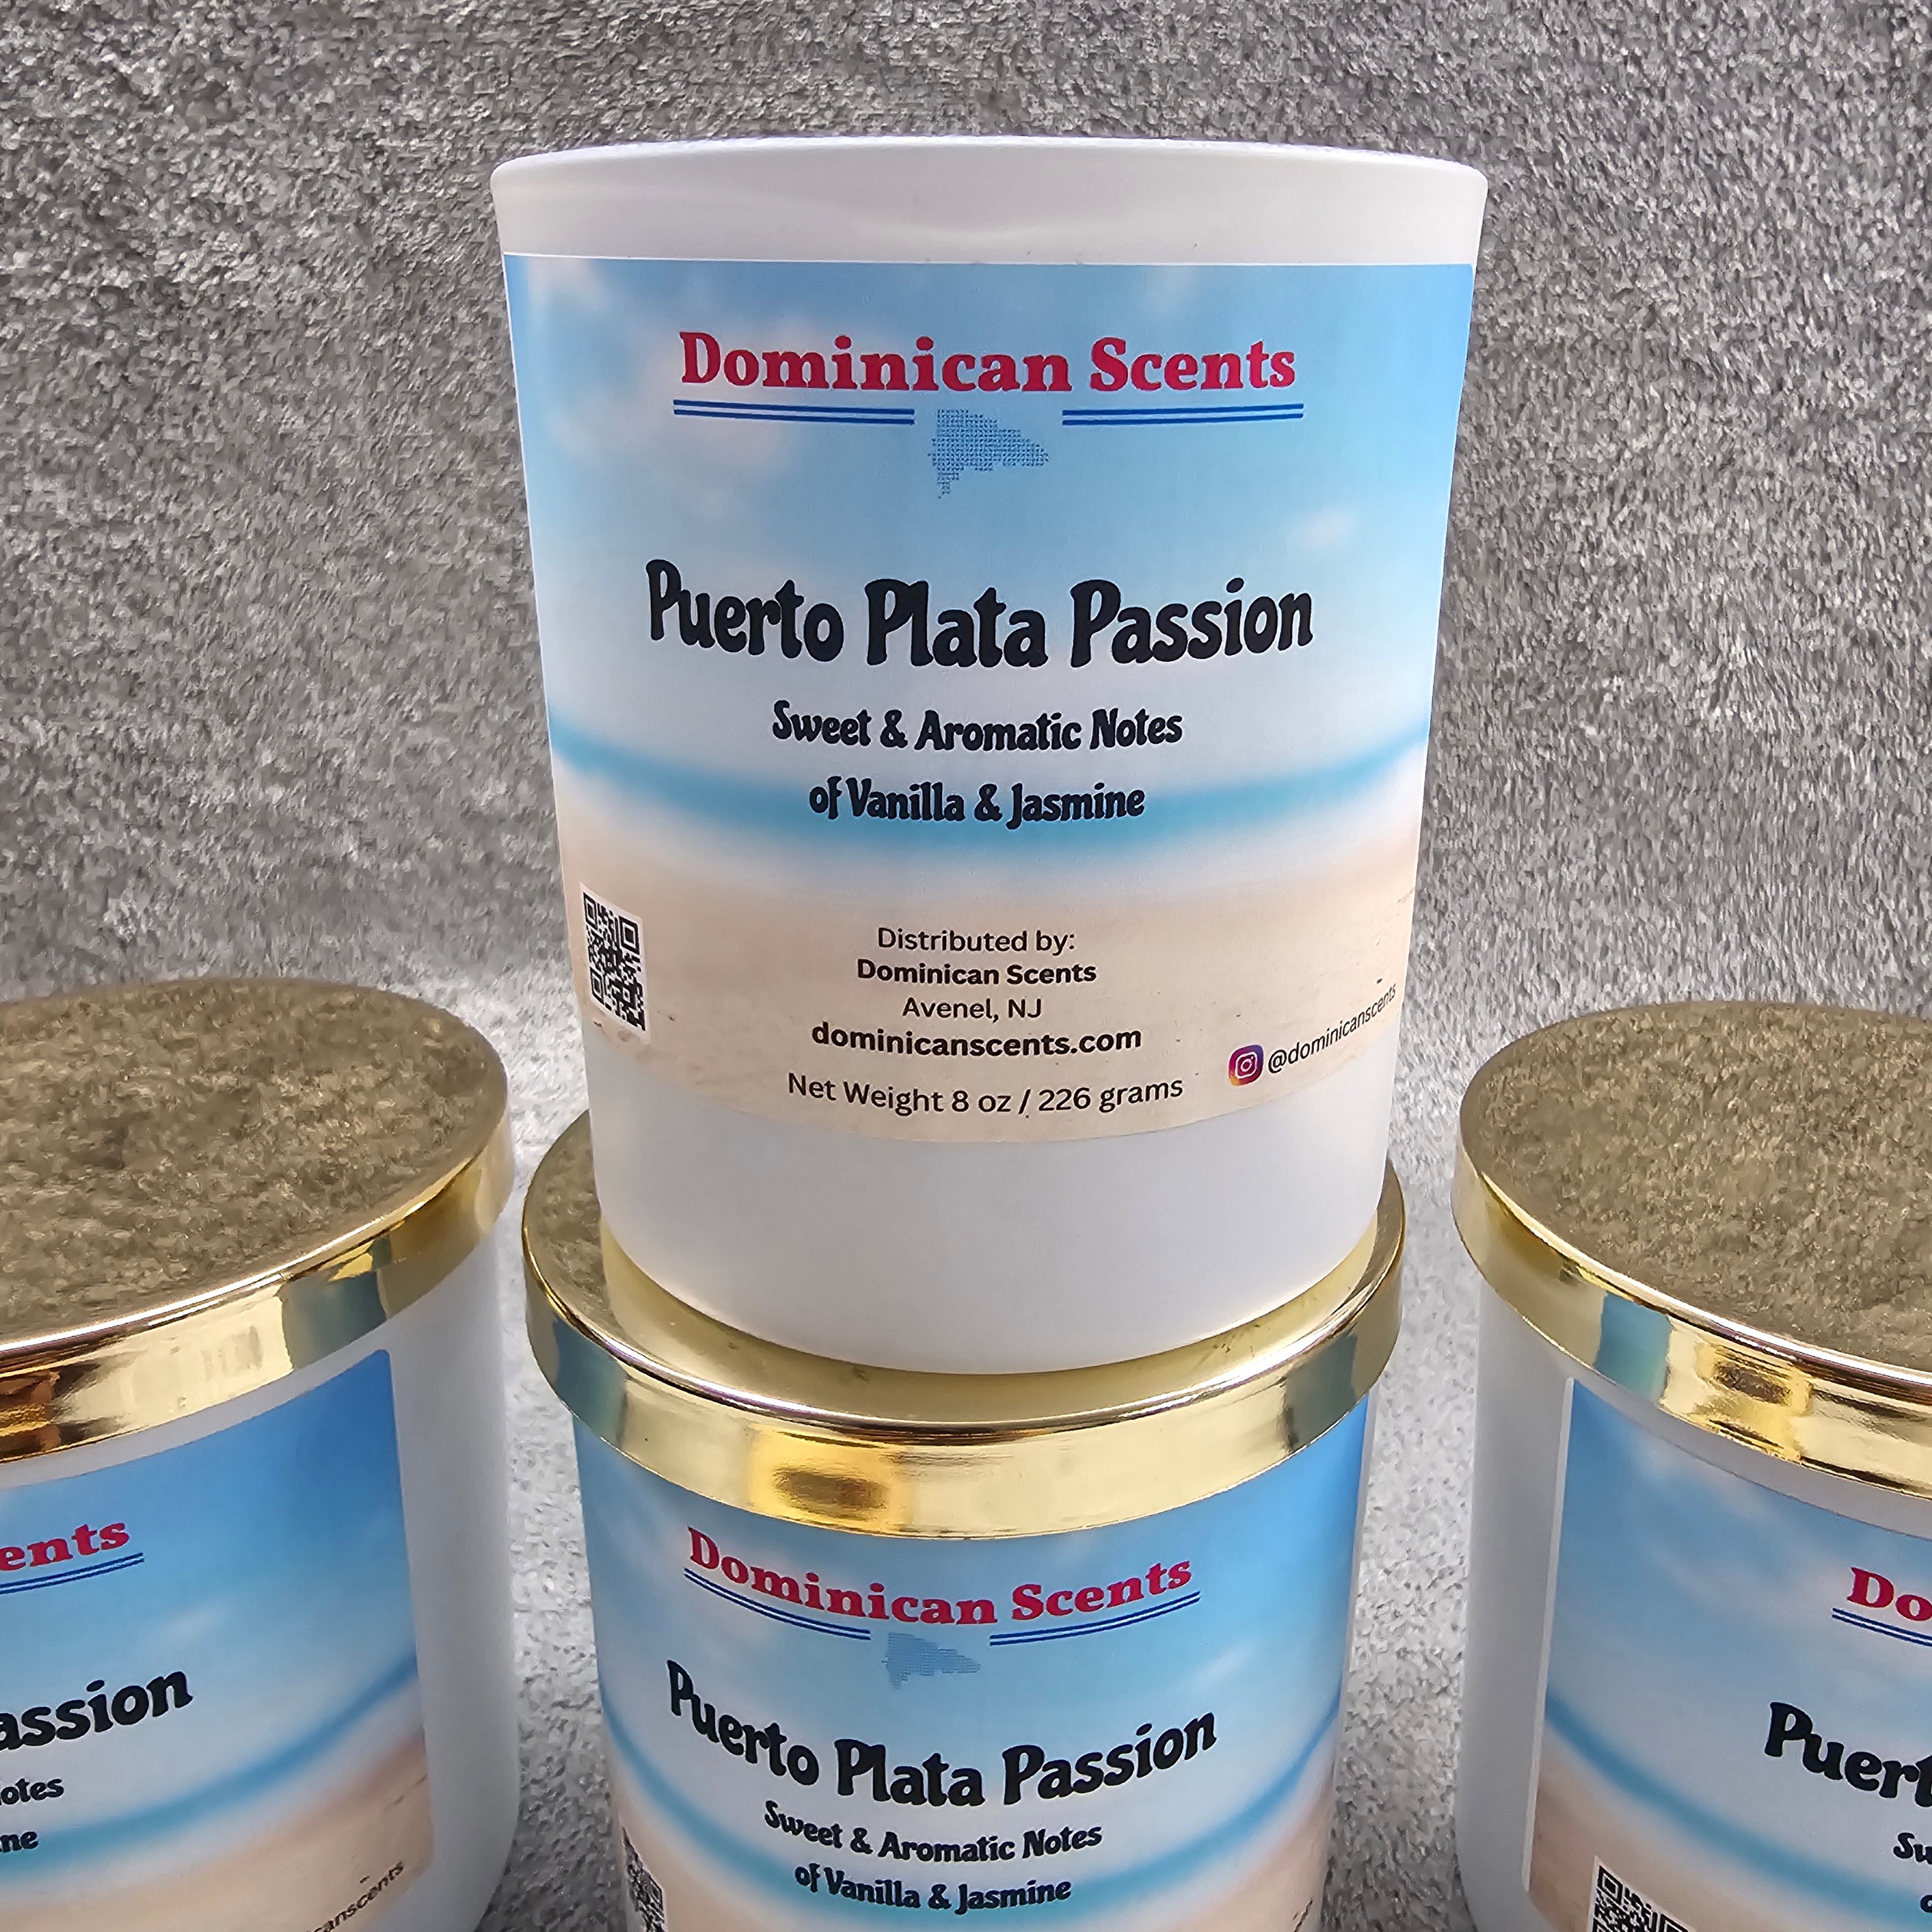 Puerto Plata Passion